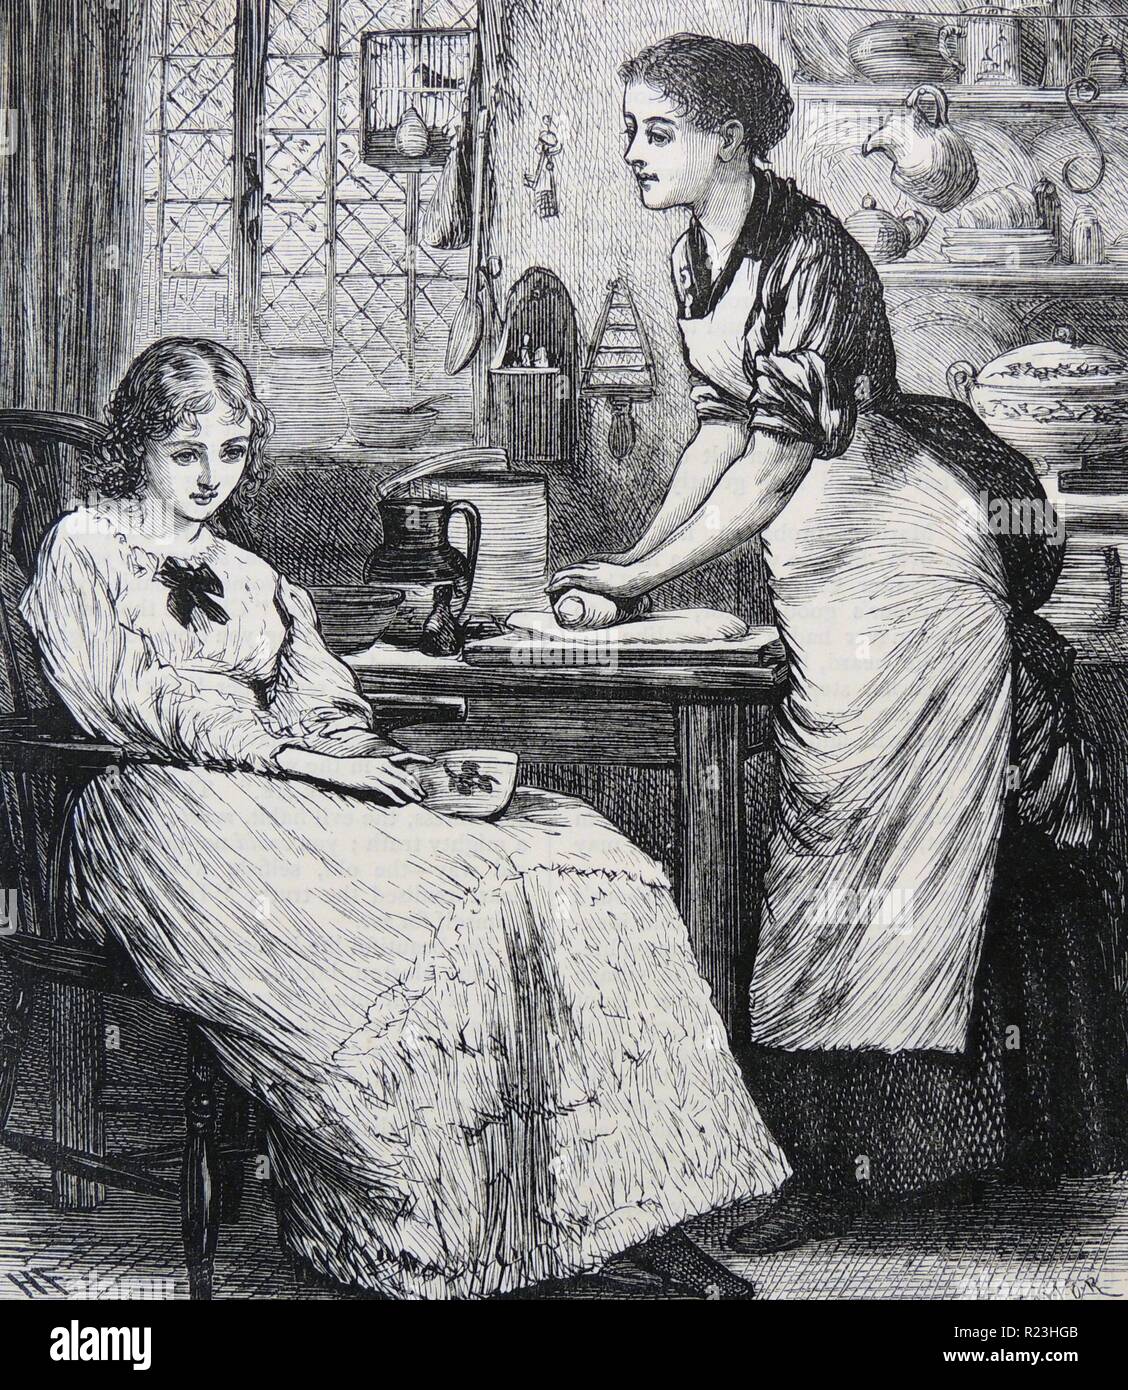 Küche Szene mit hausfrau heraus rollen Gebäck auf tablewile sprechen zu kränklich aussehende Mädchen in einem Windsor Stuhl sitzt. Kupferstich, London, 1886. Stockfoto